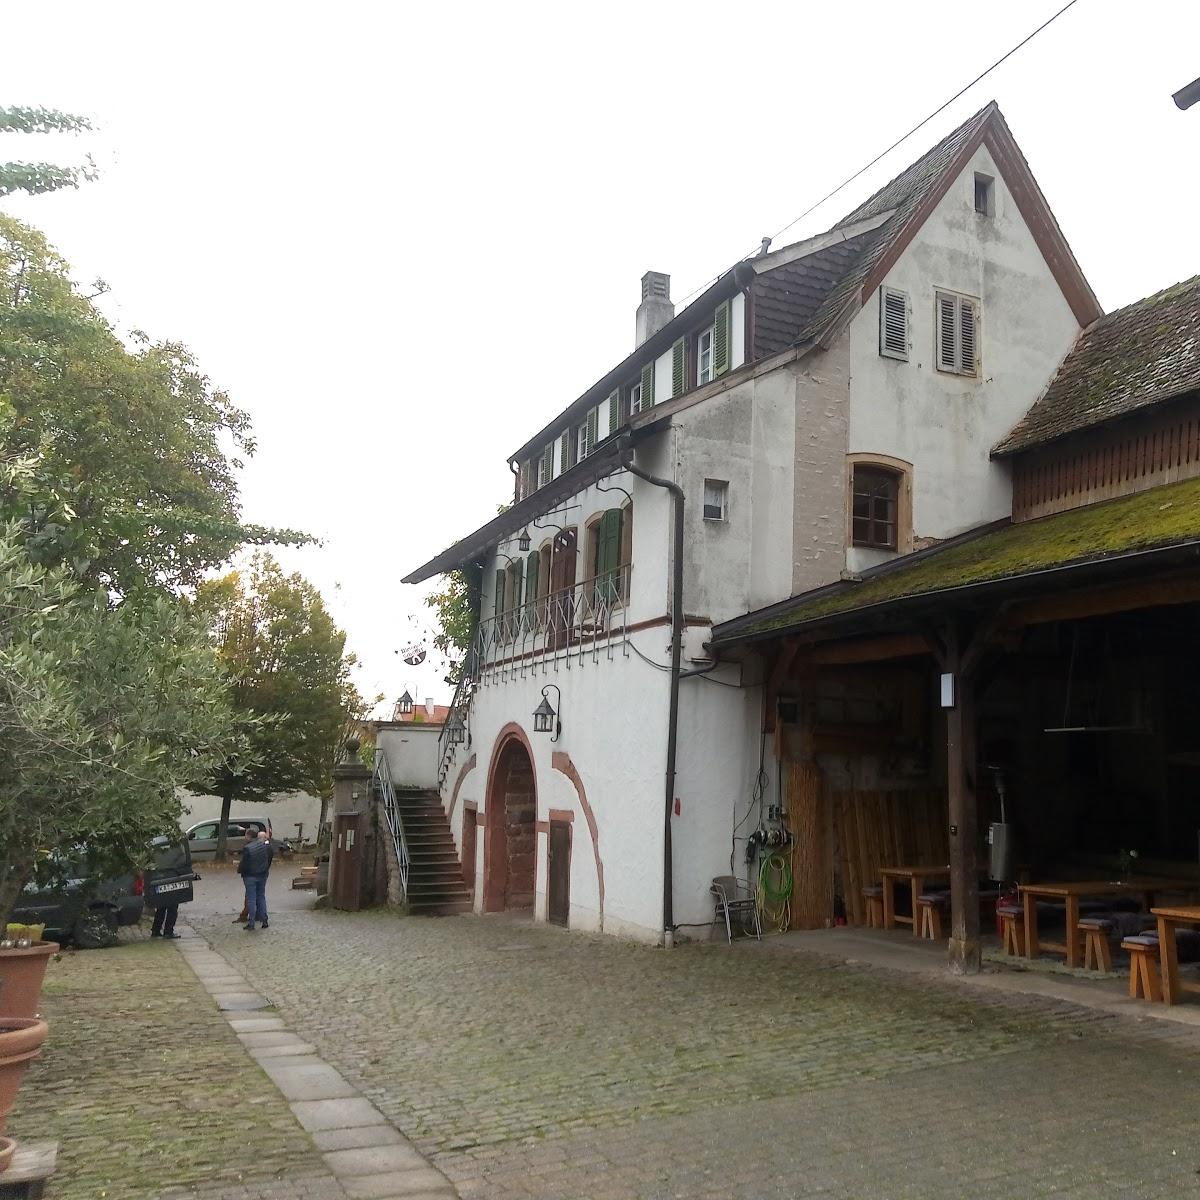 Restaurant "Zum Goldenen Becher" in Neustadt an der Weinstraße